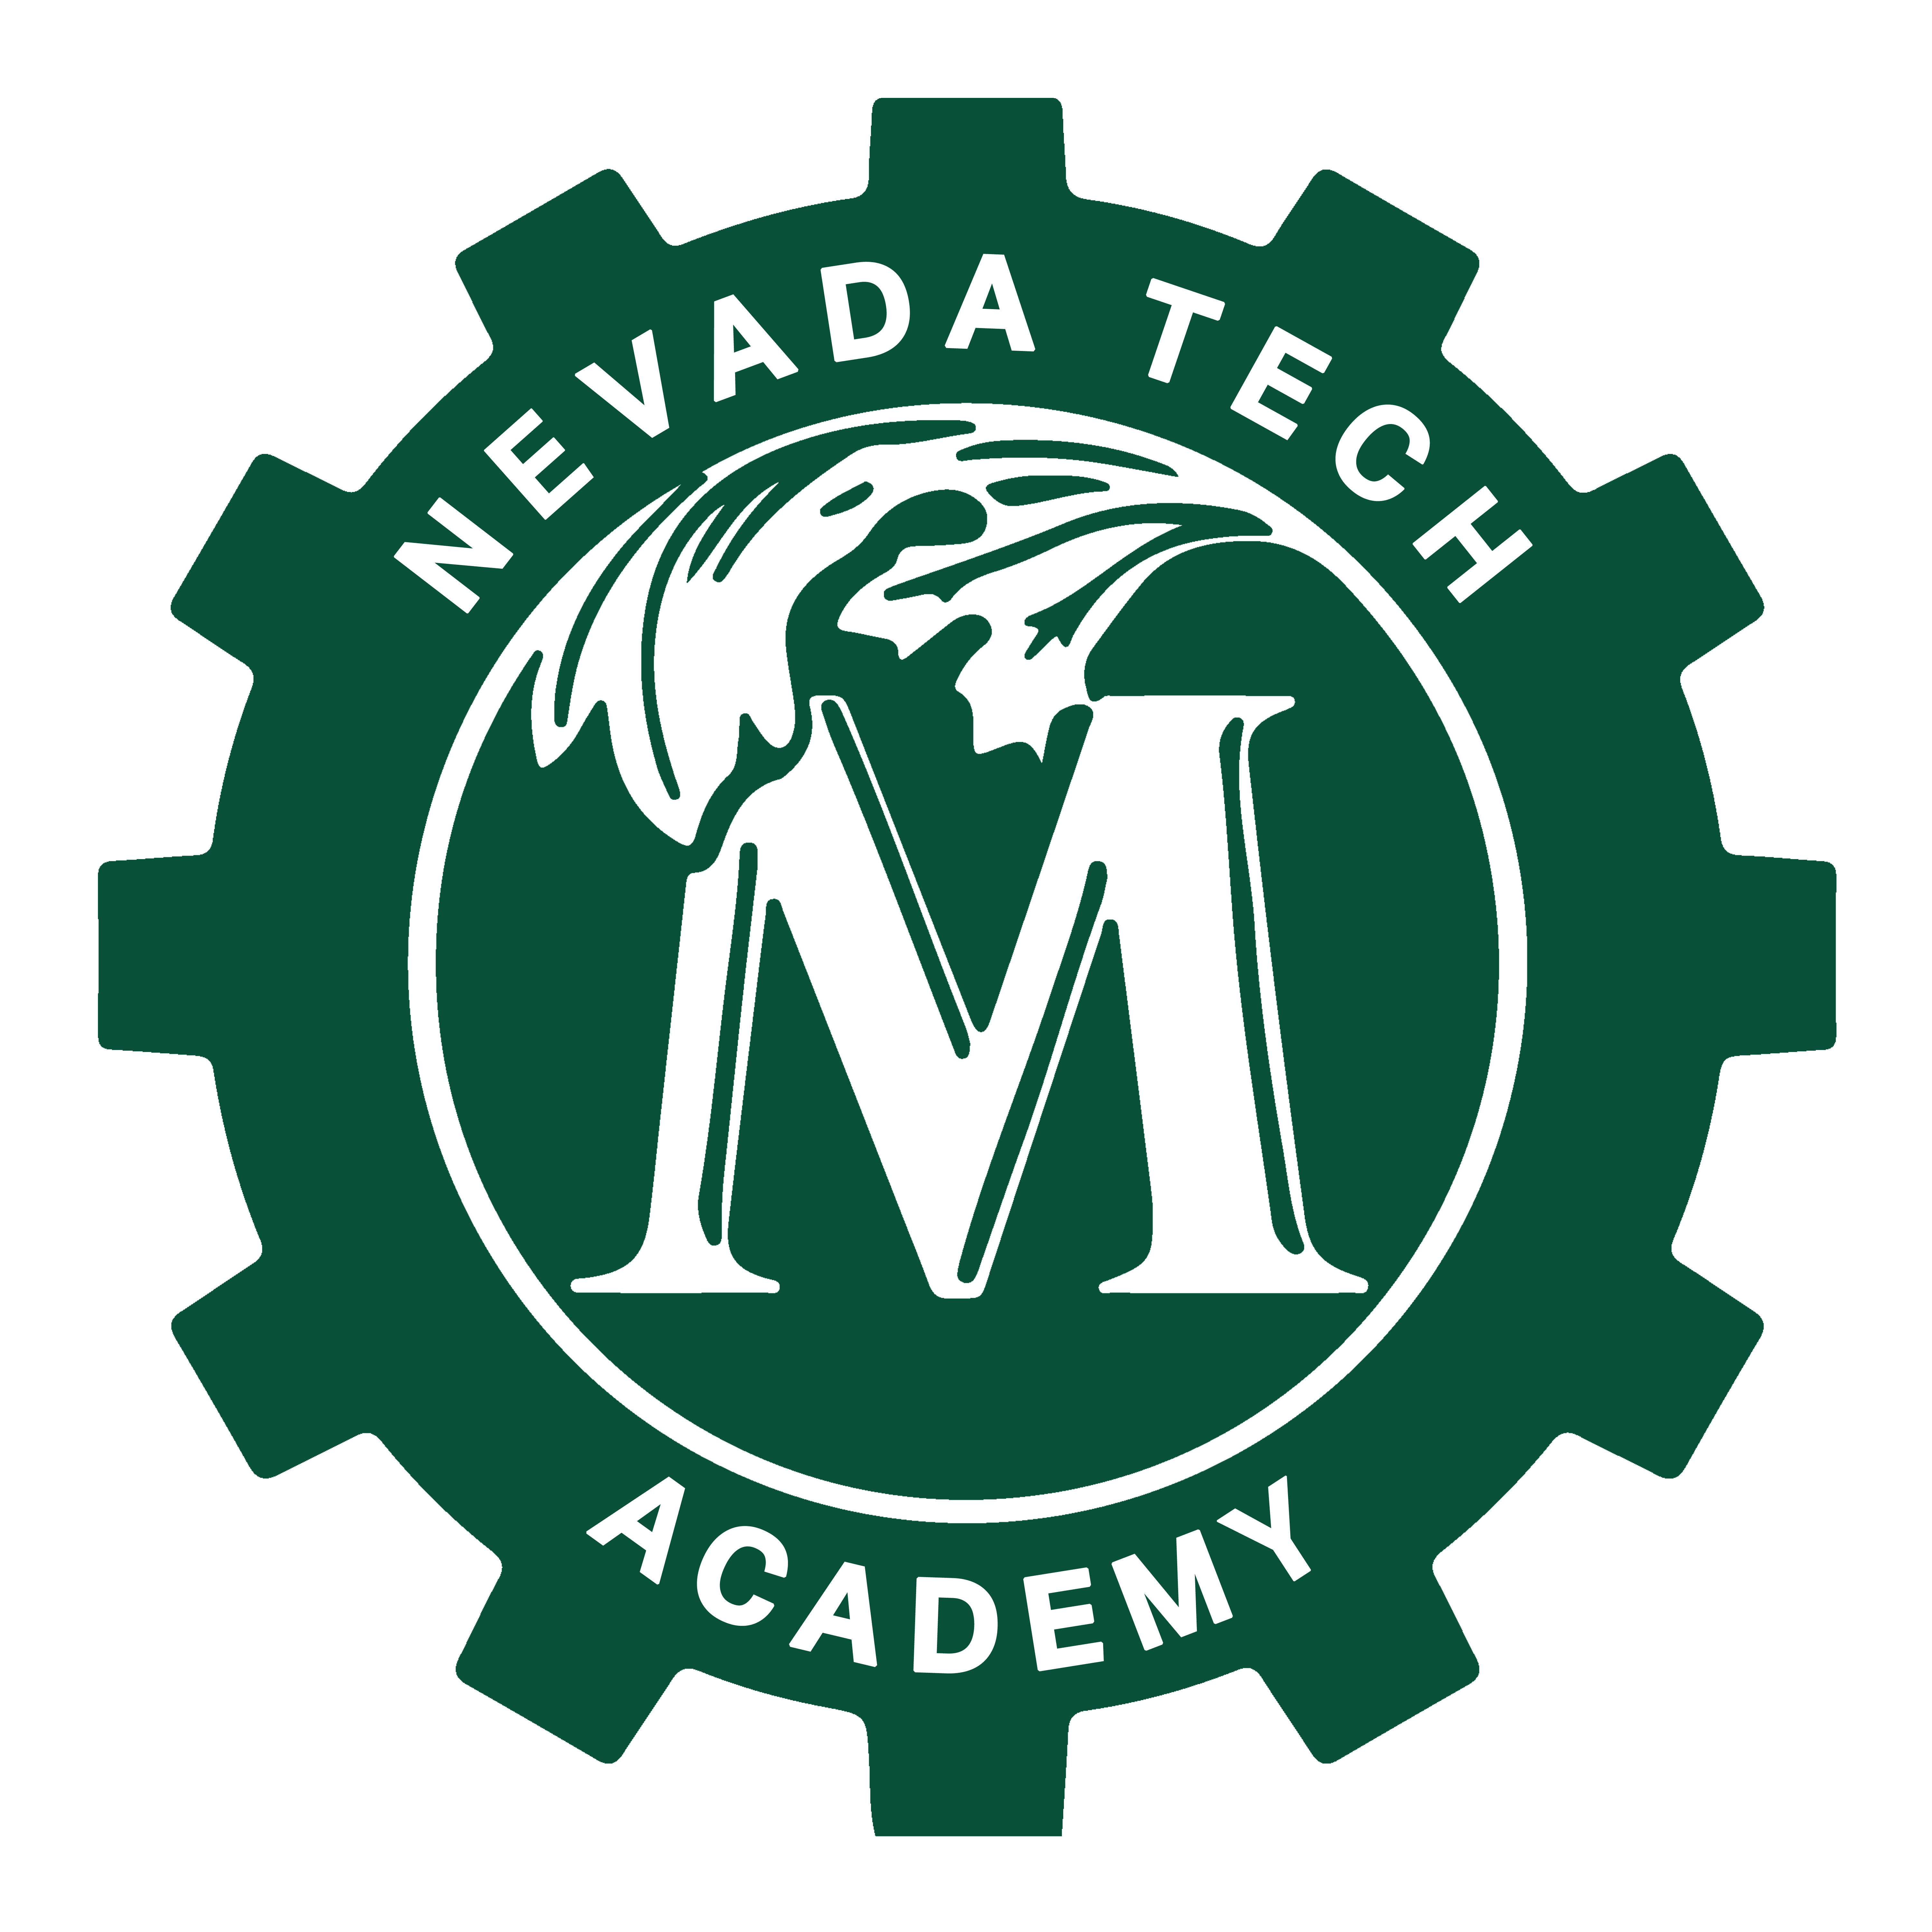 Nevada Technology Academy